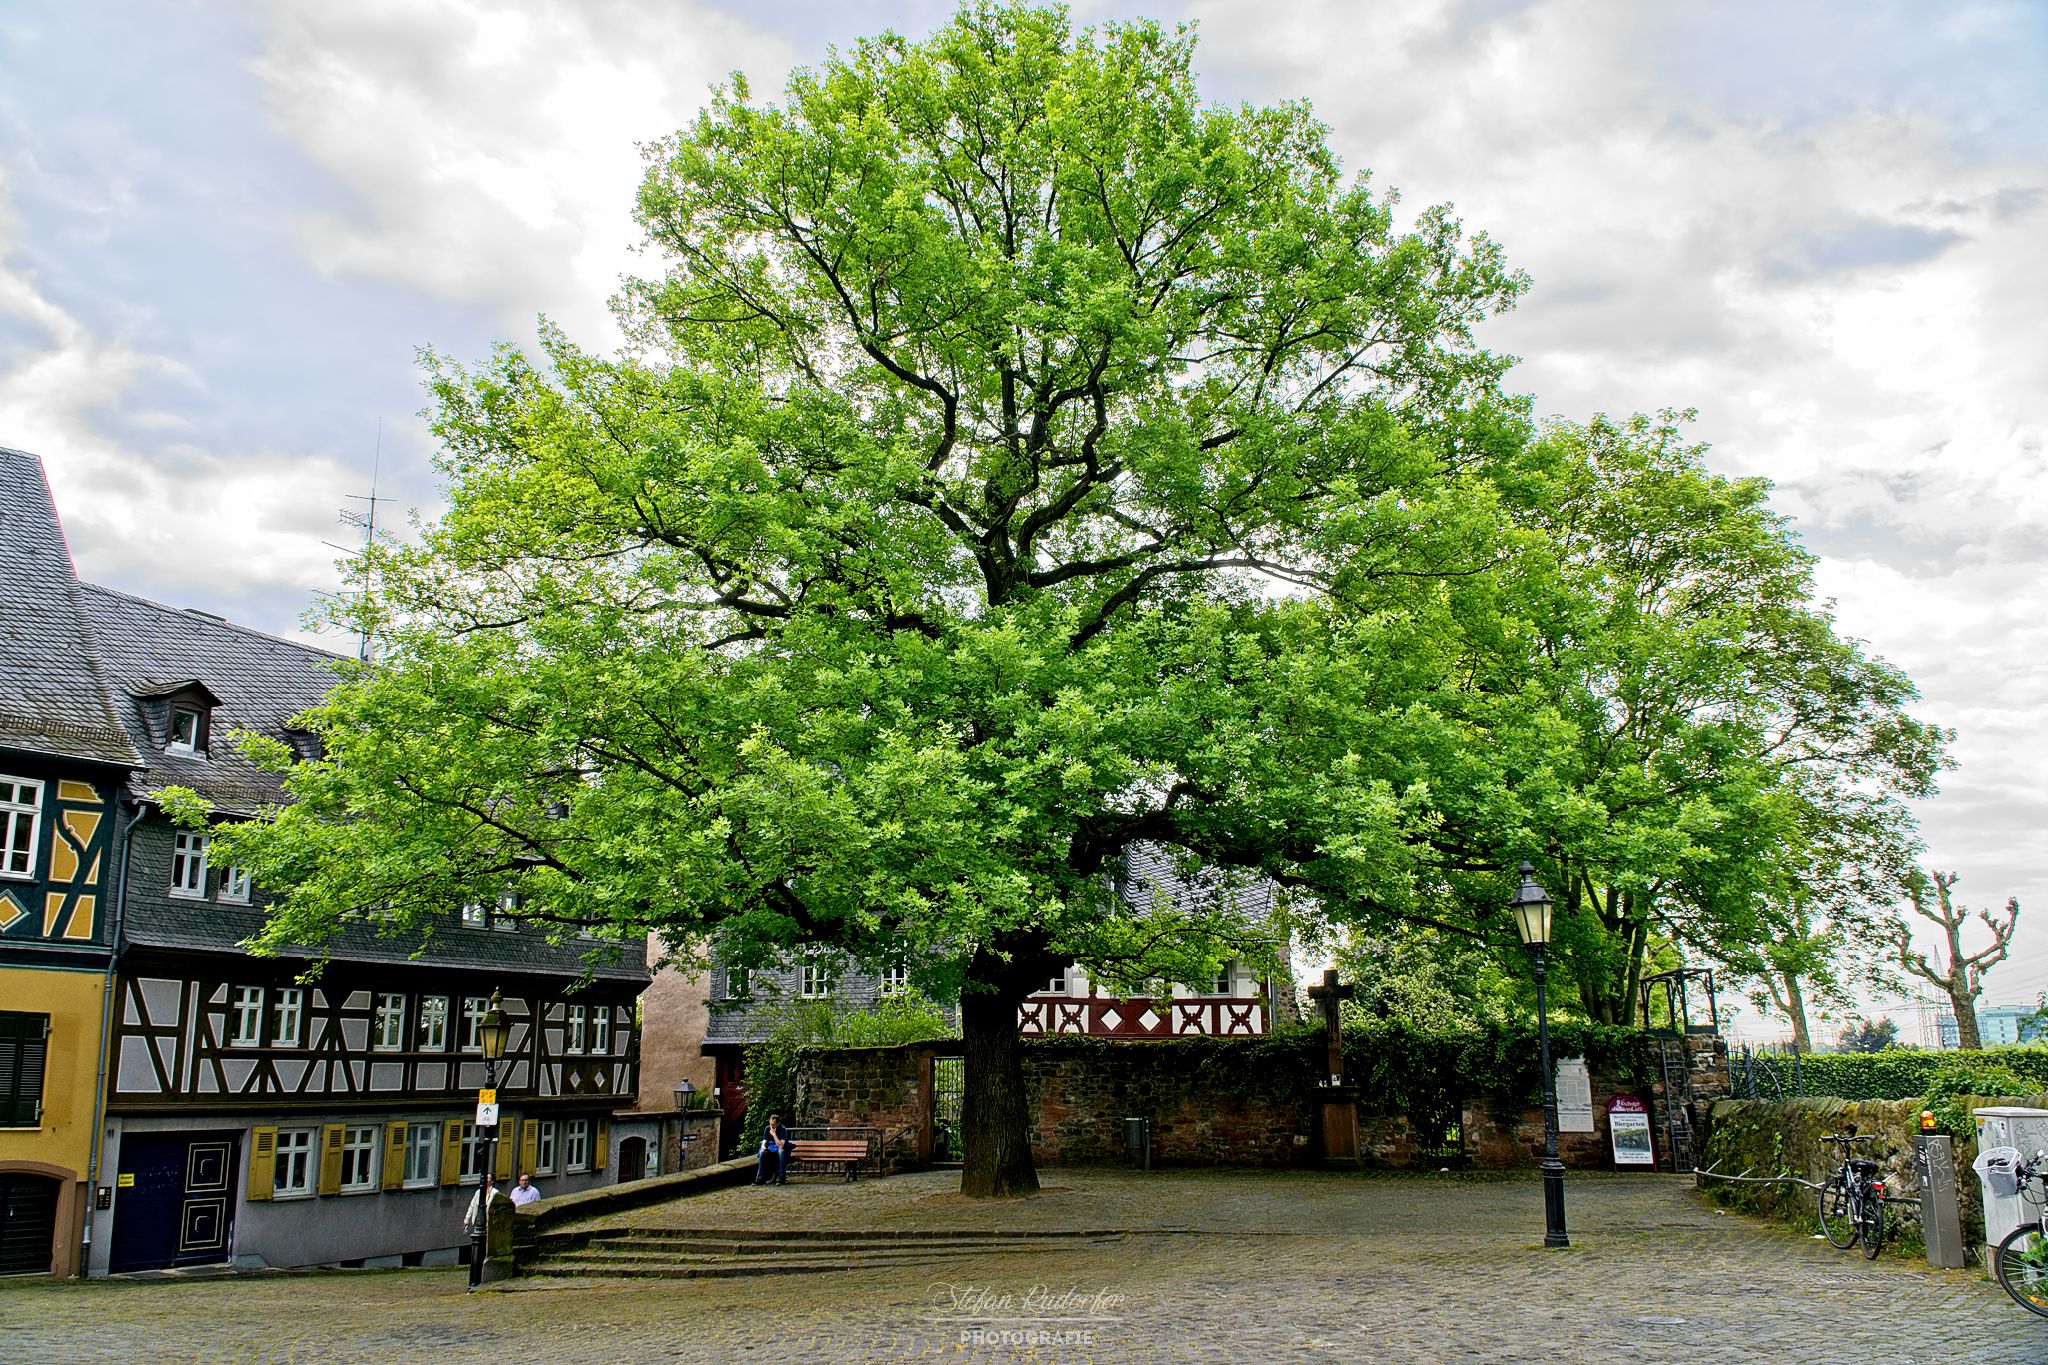 Markplatz mit Baum